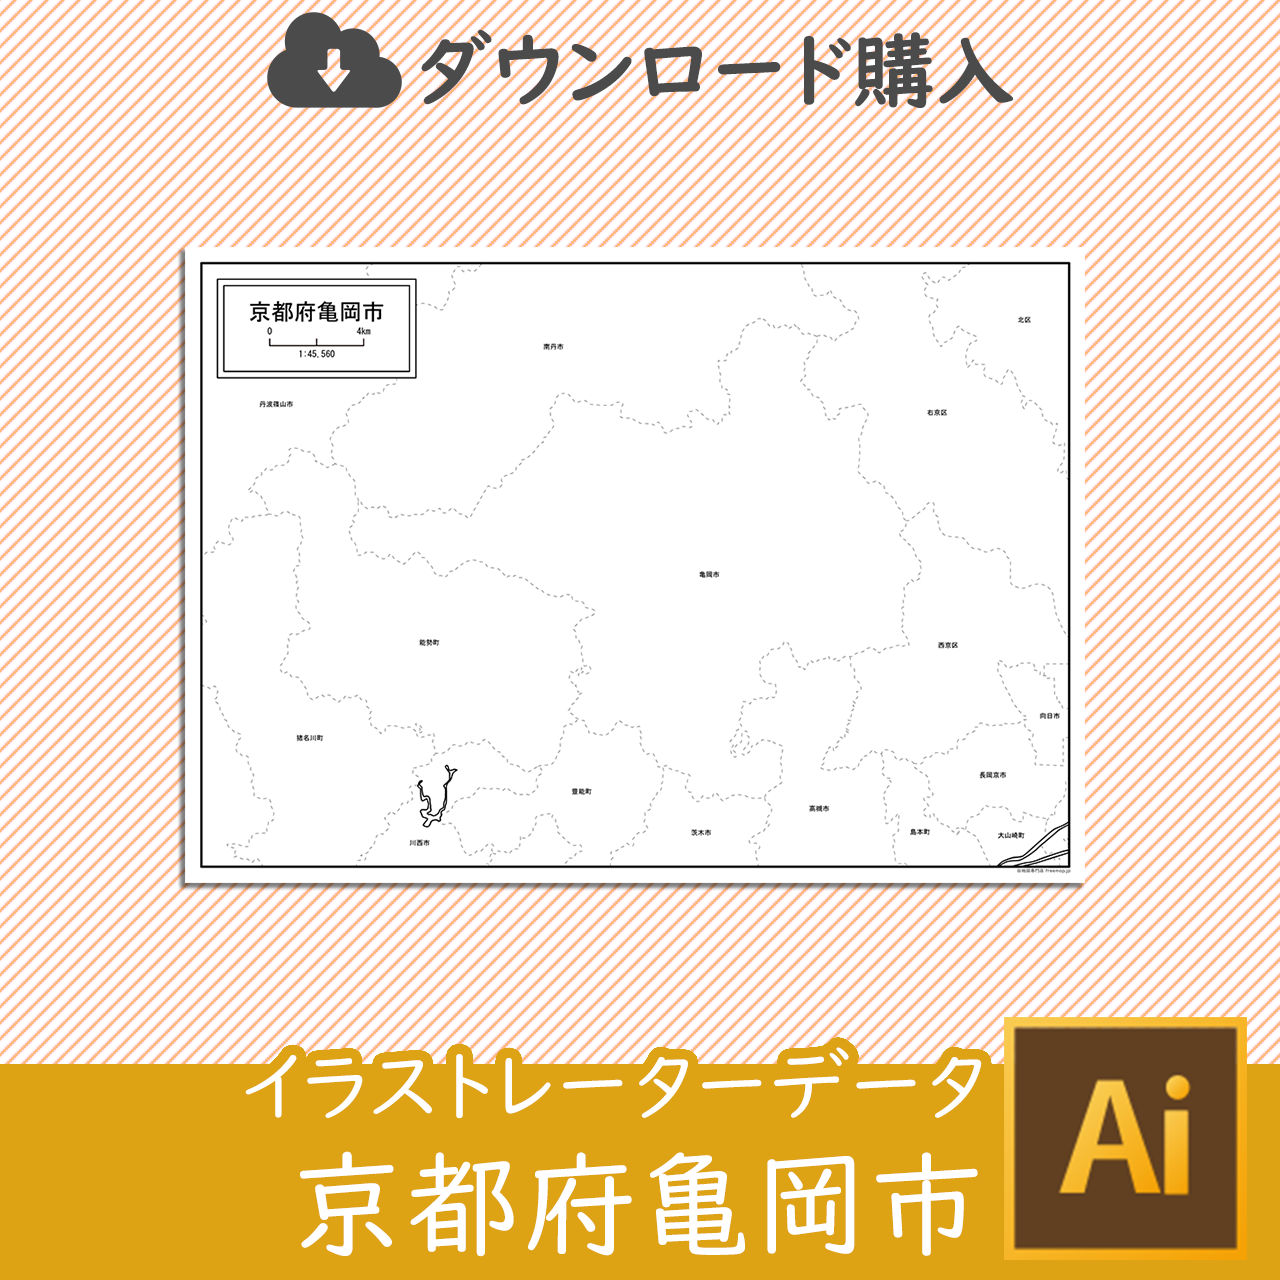 亀岡市のaiデータのサムネイル画像